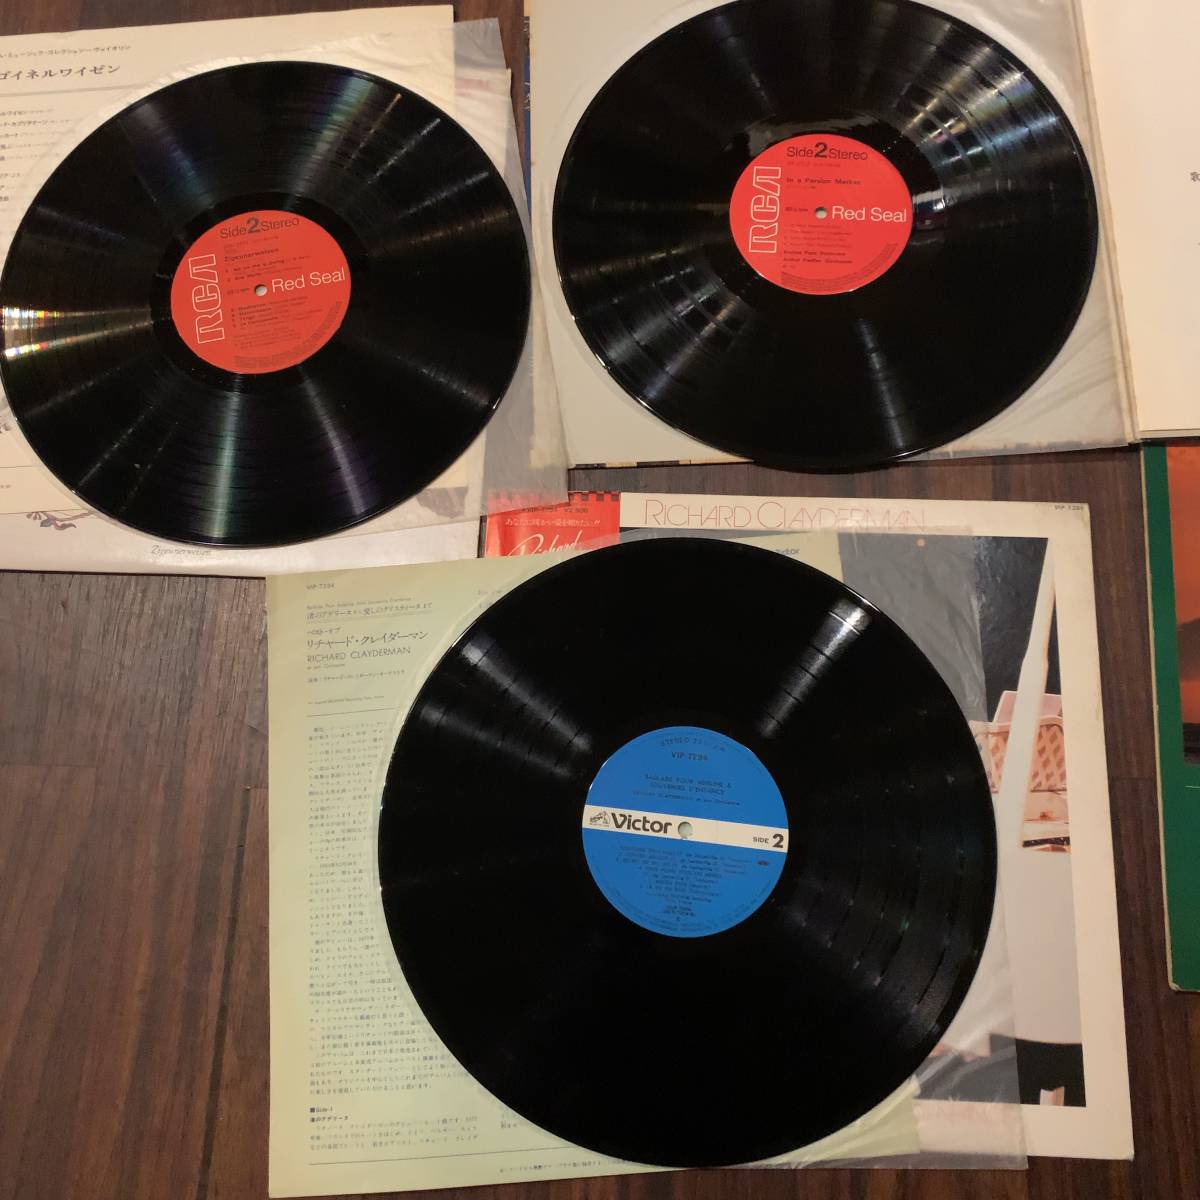 中古LPクラシックレコード5枚セット ANDY WILLIAMS ペルシャの市場 サックスムード ツィゴイネルワイゼン リチャード・クレイダーマン_画像4